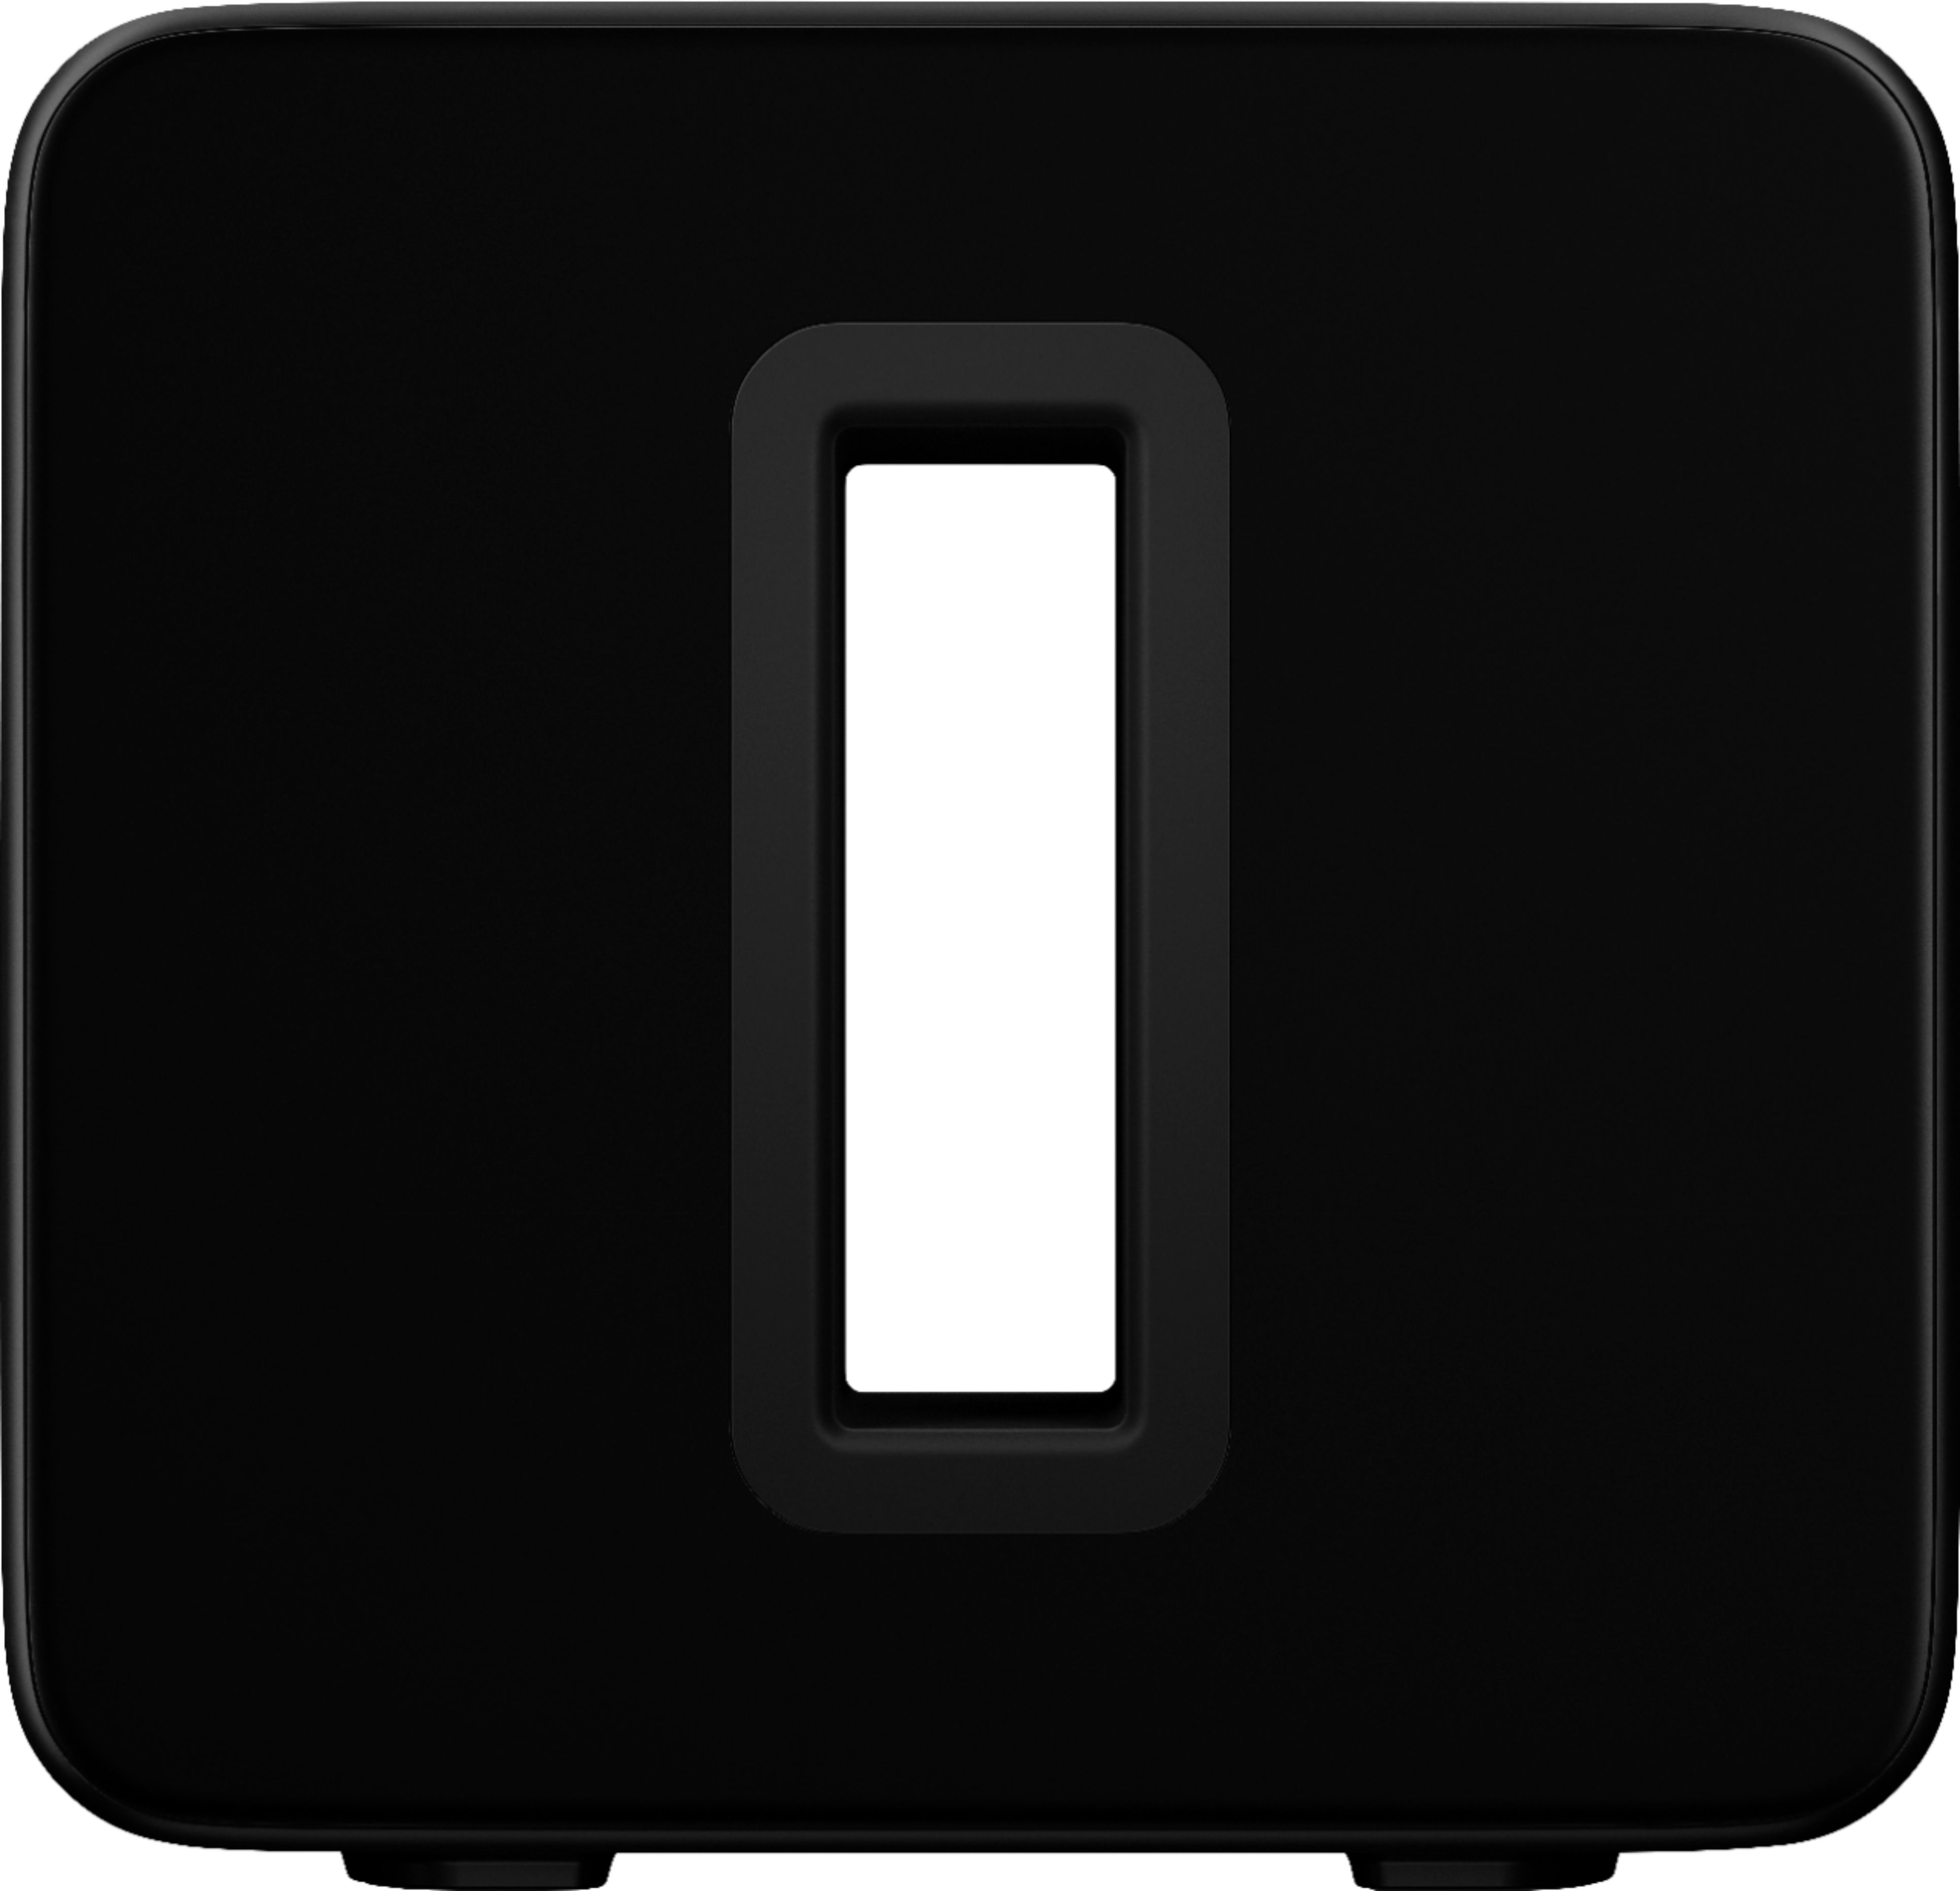 Sonos Sub Wireless Subwoofer (Gen 3) | Black or White | Coast Guard Exchange  - $599.99